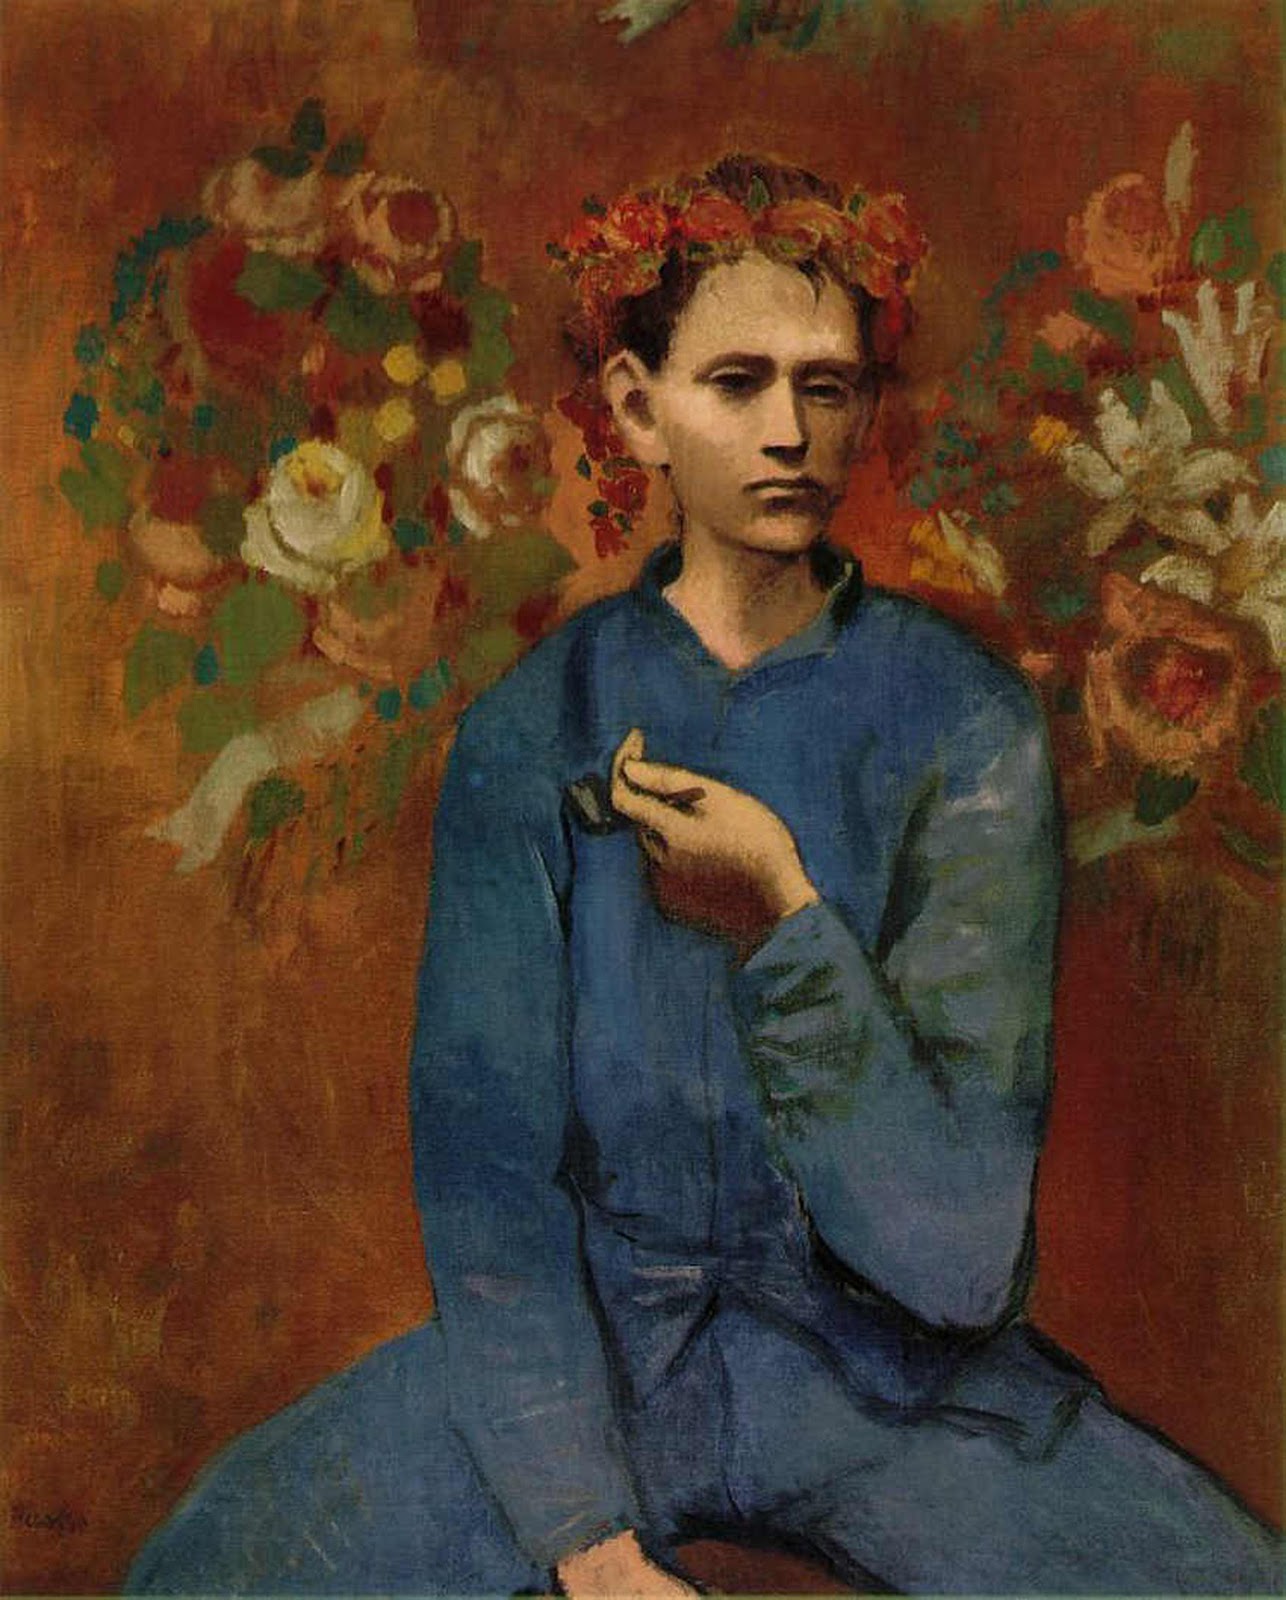 Ragazzo con la pipa by Pablo Picasso - 1905 - 100 × 81.3 cm collezione privata